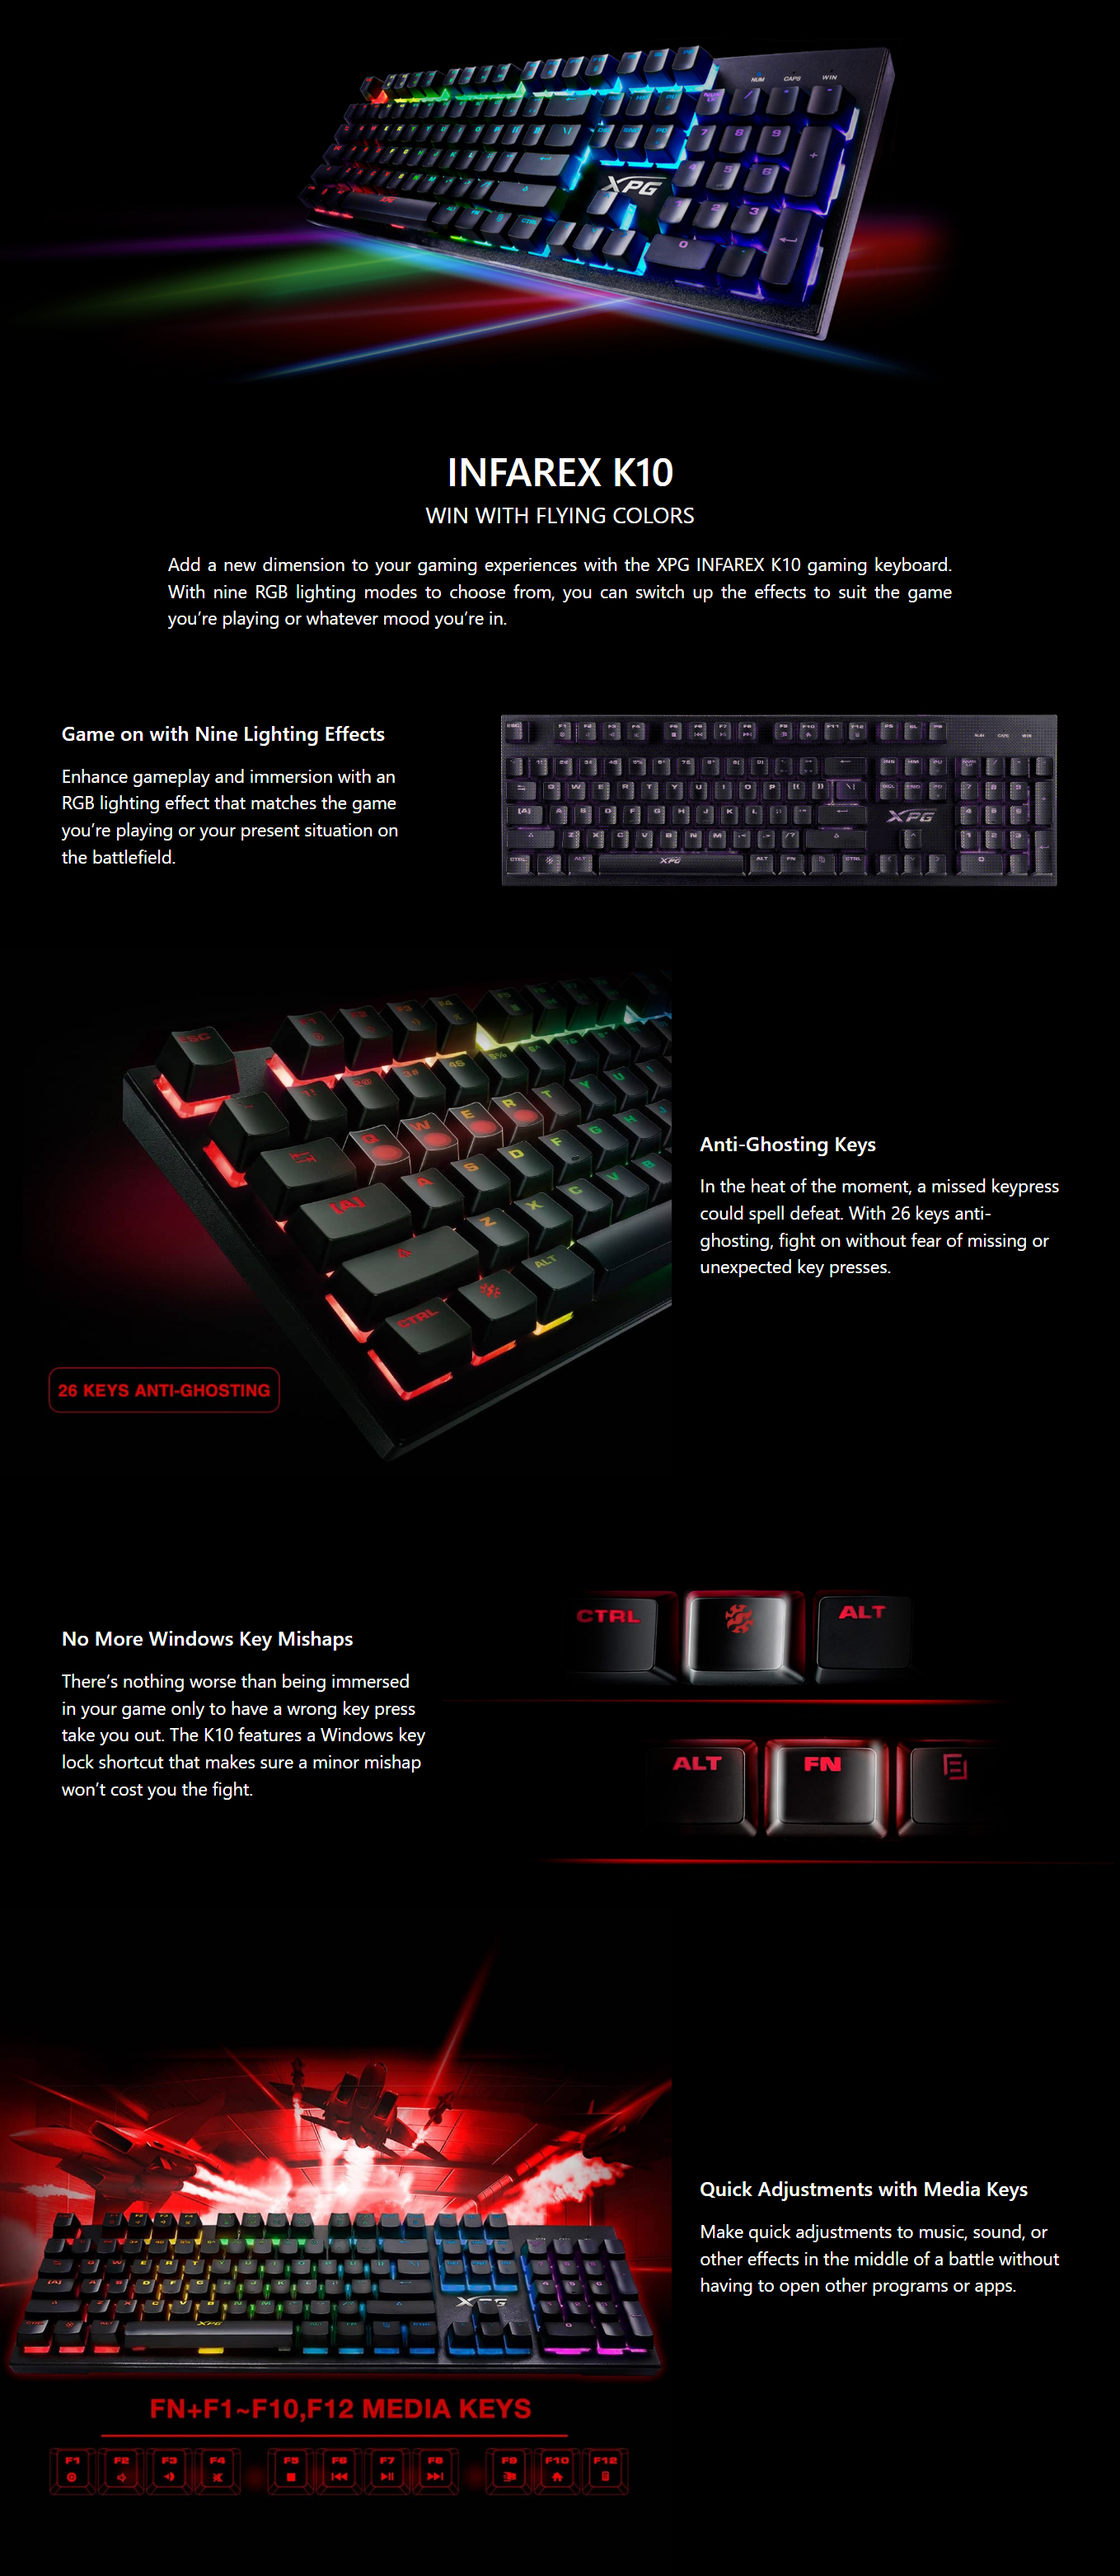 Keyboards-ADATA-XPG-Infarex-K10-RGB-Gaming-Keyboard-1